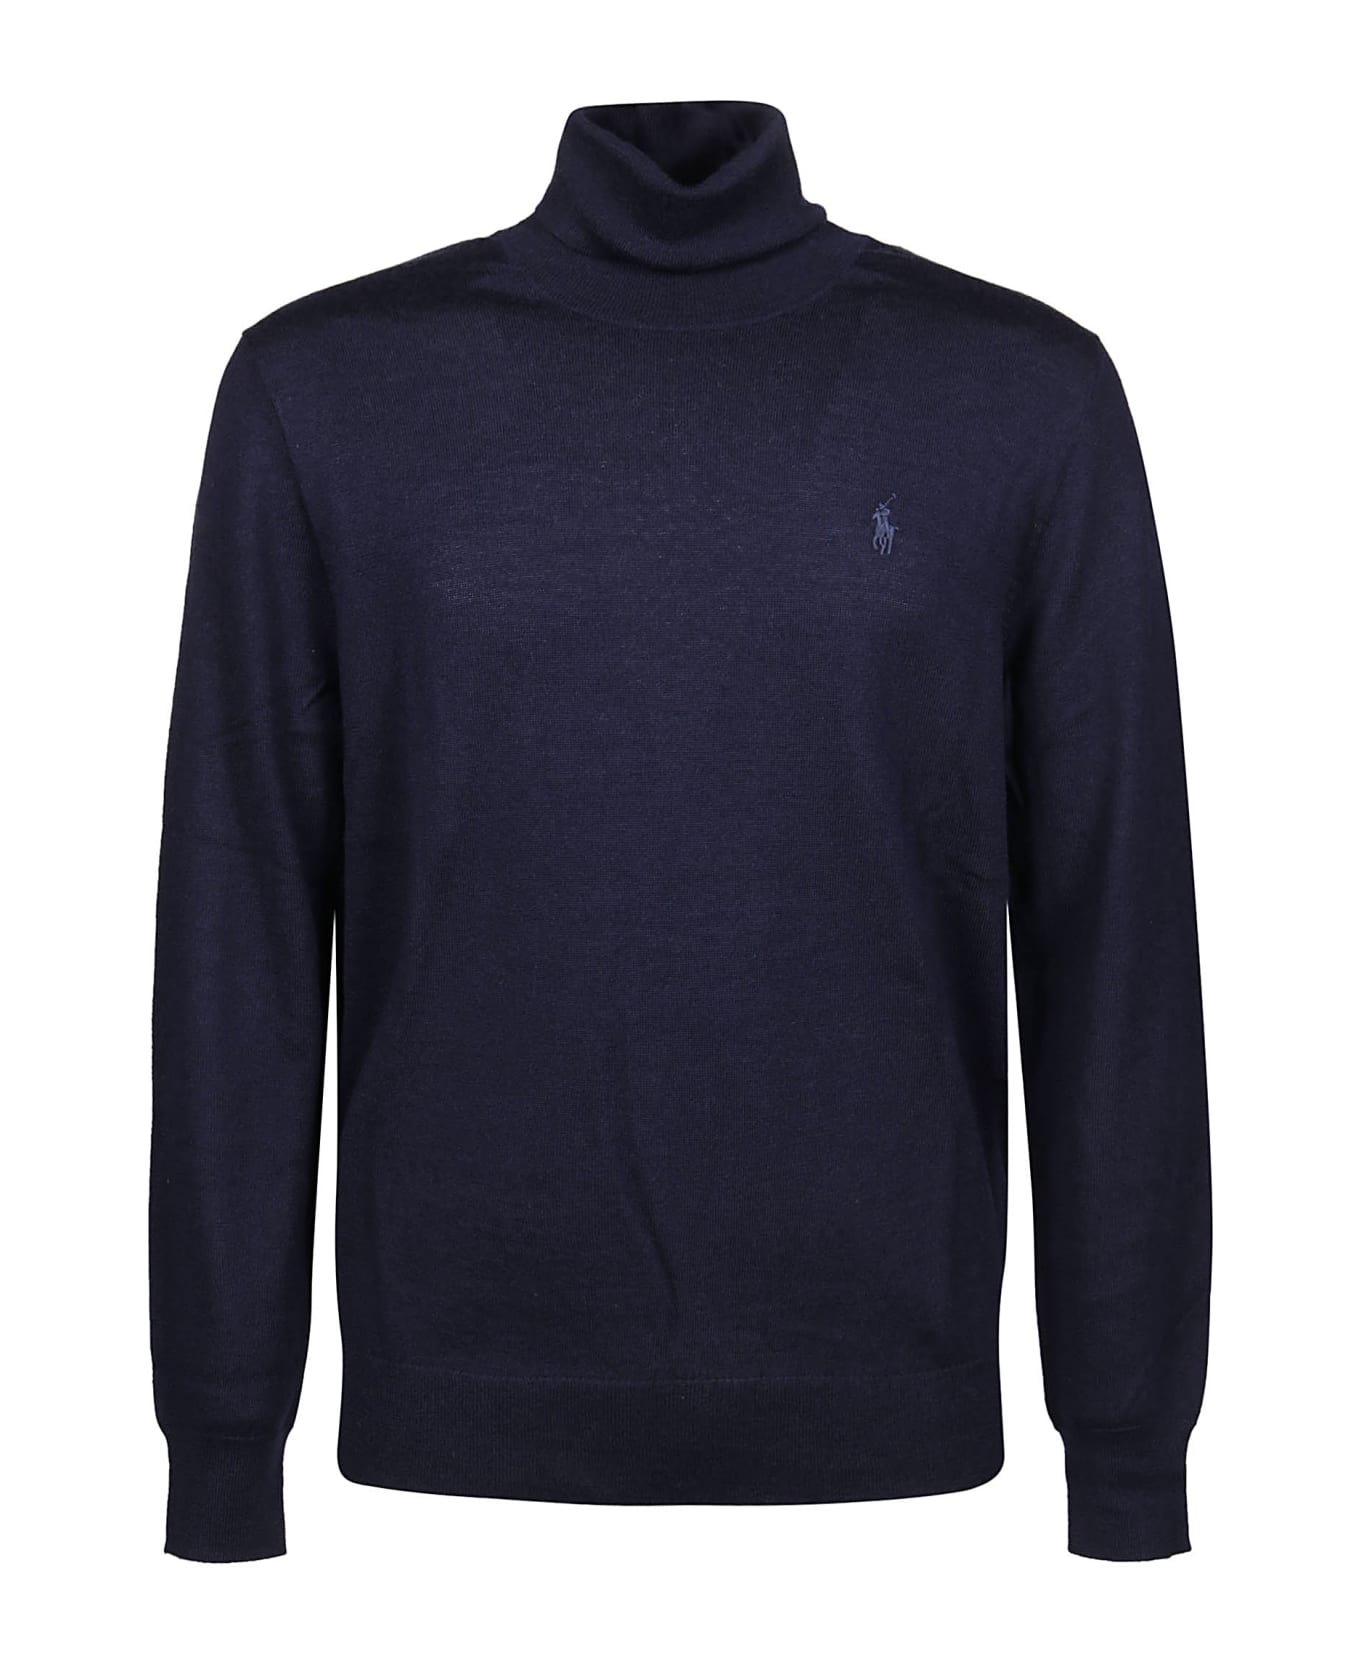 Ralph Lauren Long Sleeve Sweater - Hunter Navy ニットウェア